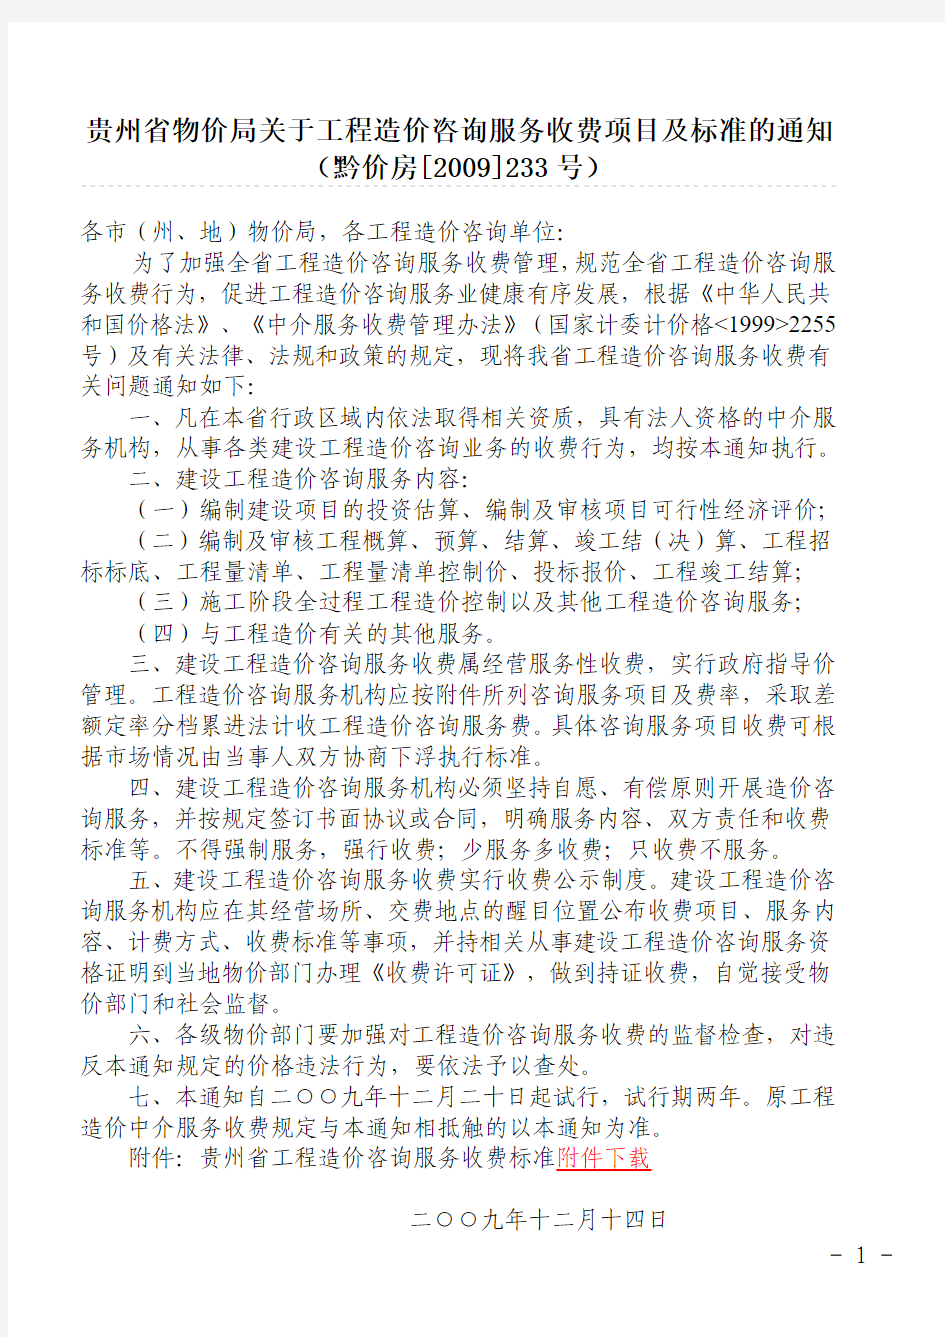 贵州省物价局关于工程造价咨询服务收费项目及标准的通知(黔价房[2009]233号)